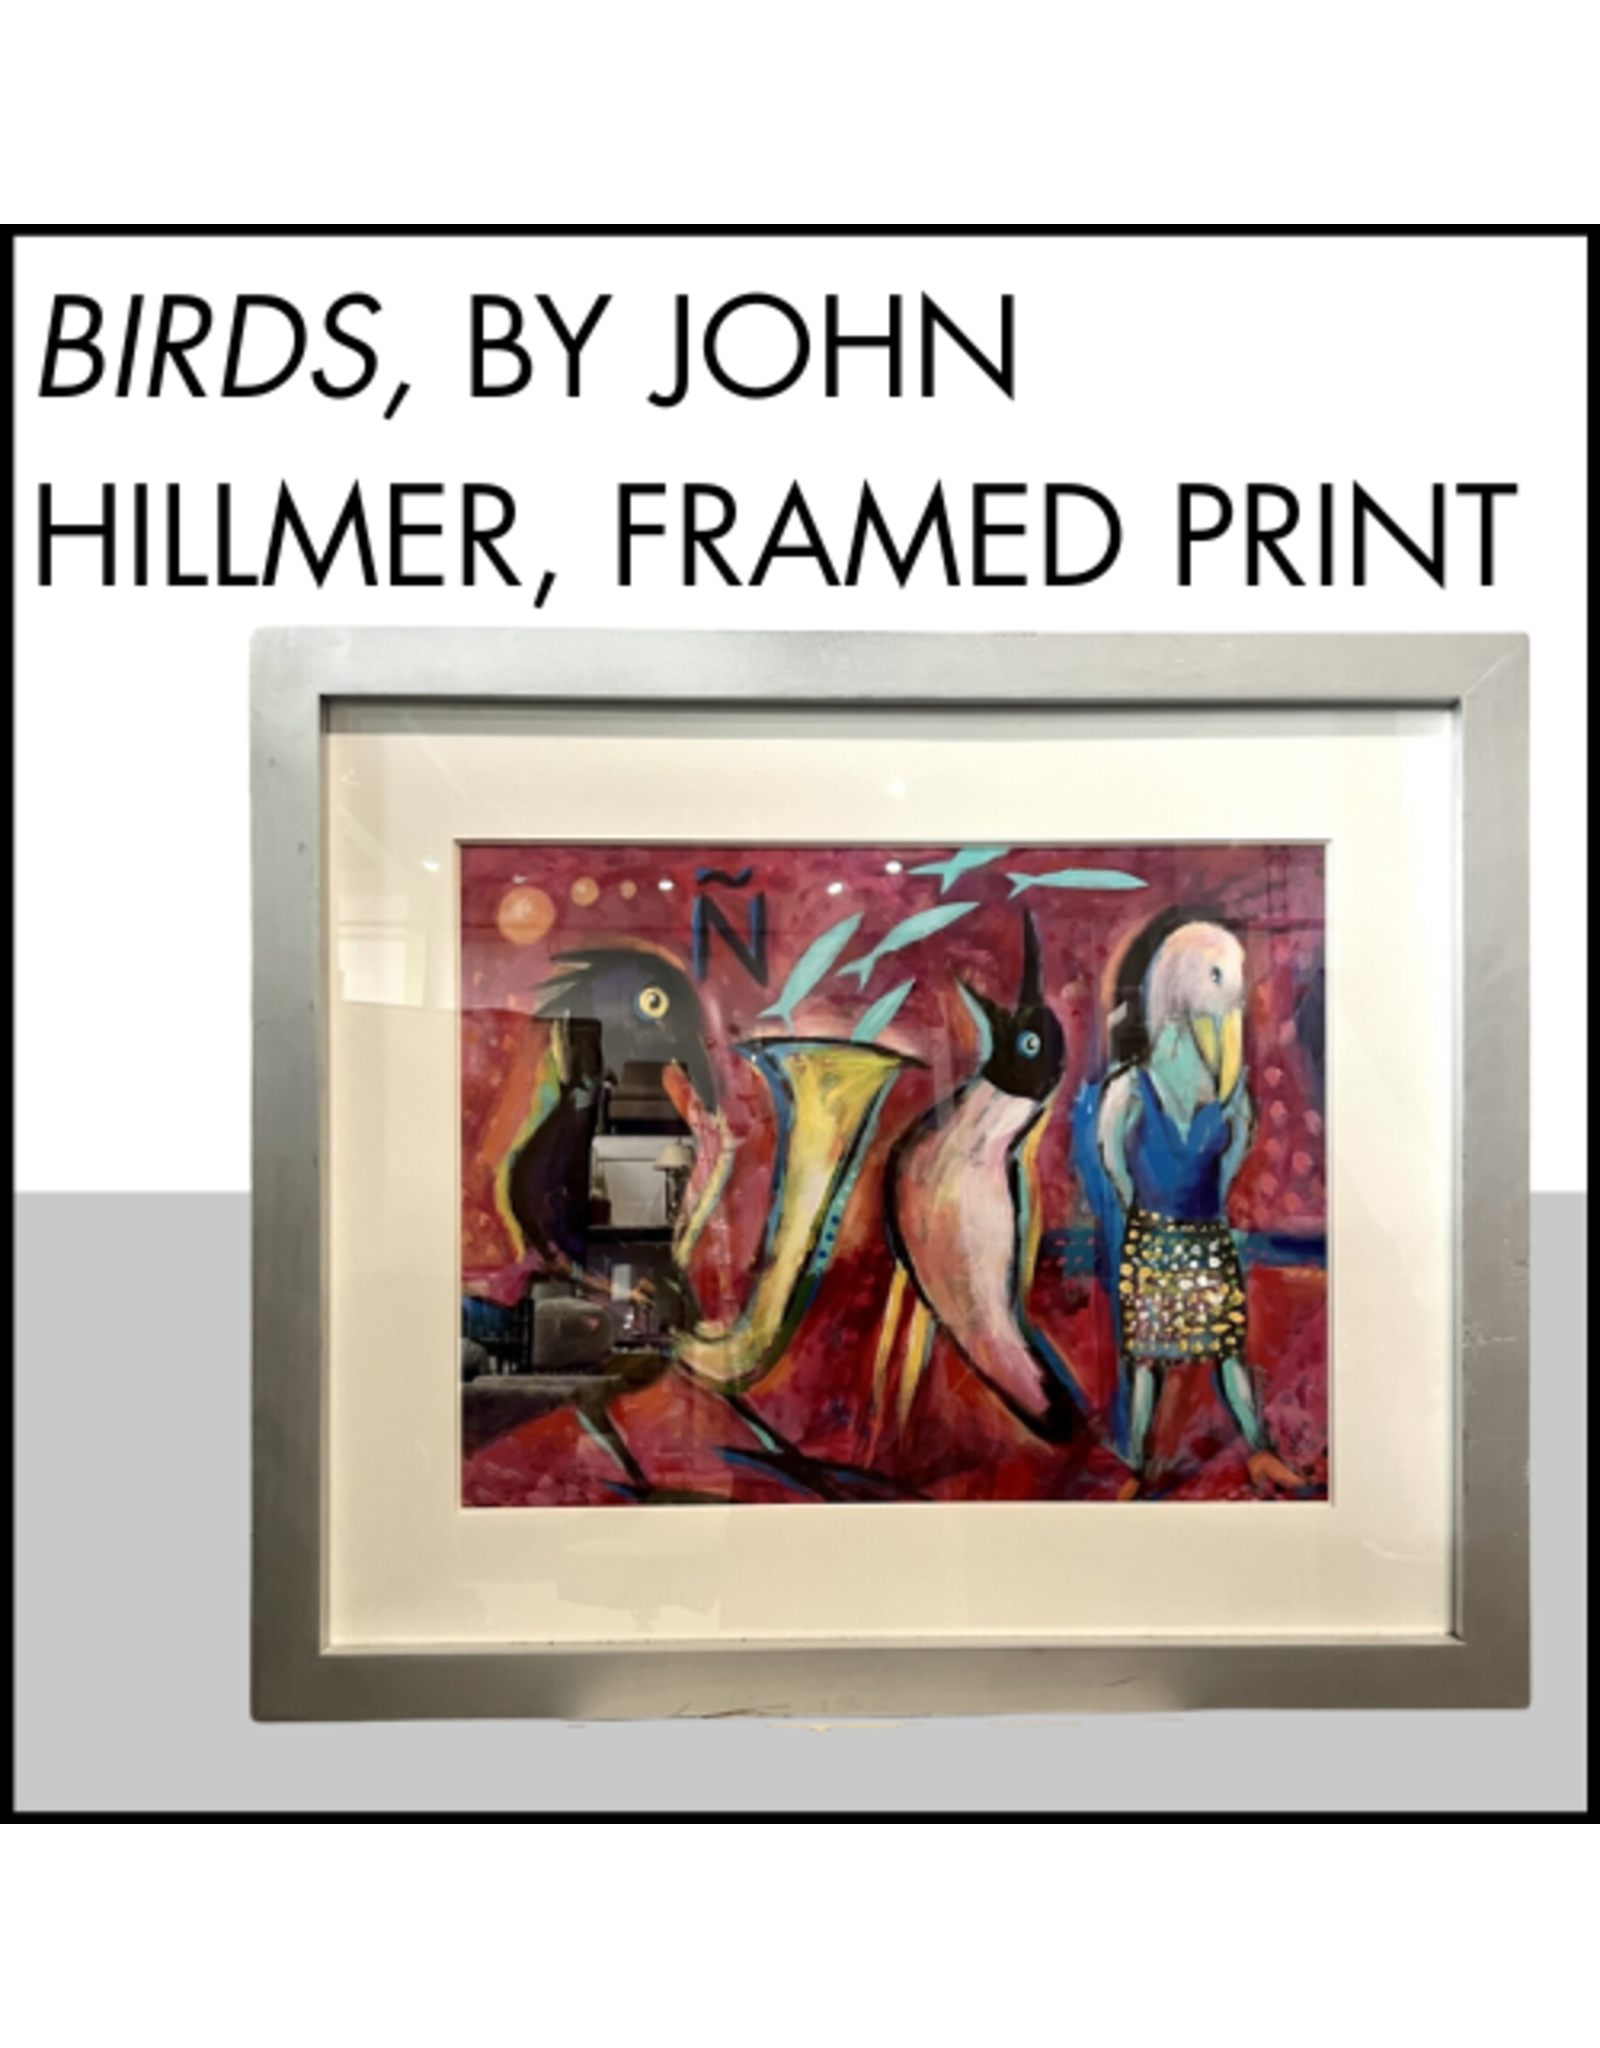 Birds, by John Hilmer framed print